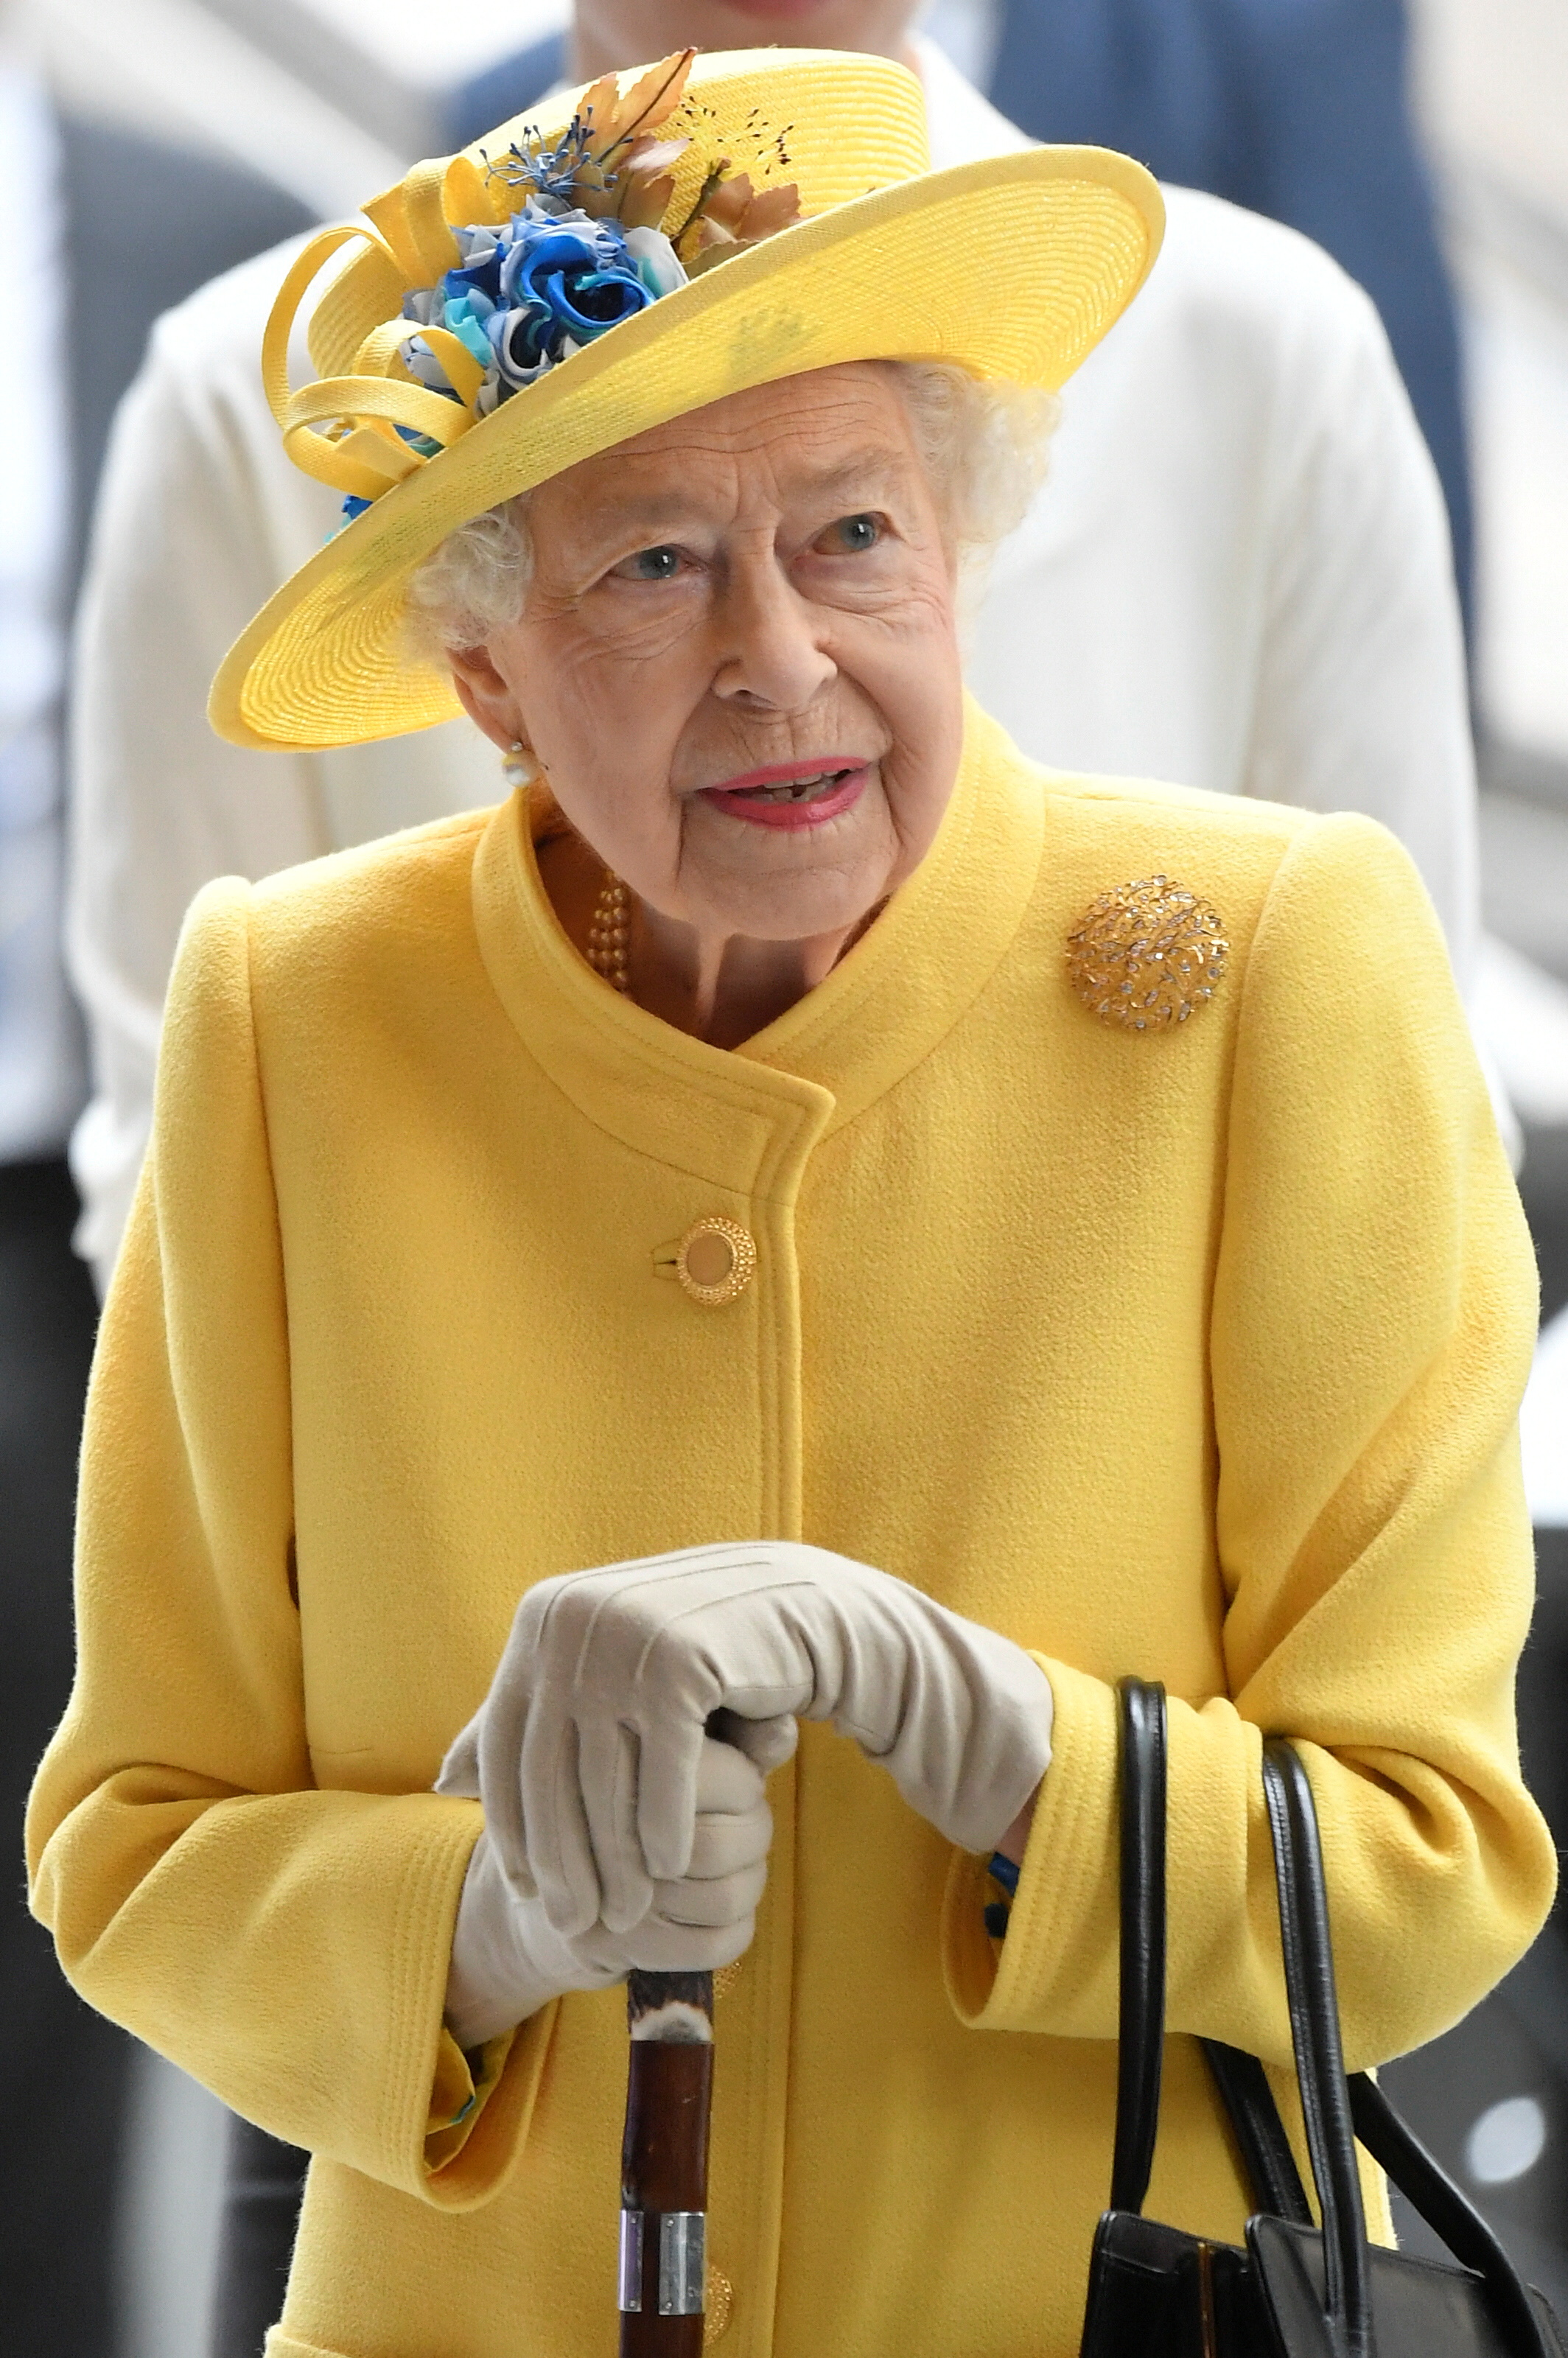 Vestida con un traje amarillo y un sombrero a juego, la reina, de 96 años, apareció sonriente y apoyándose en un bastón (REUTERS/Toby Melville)